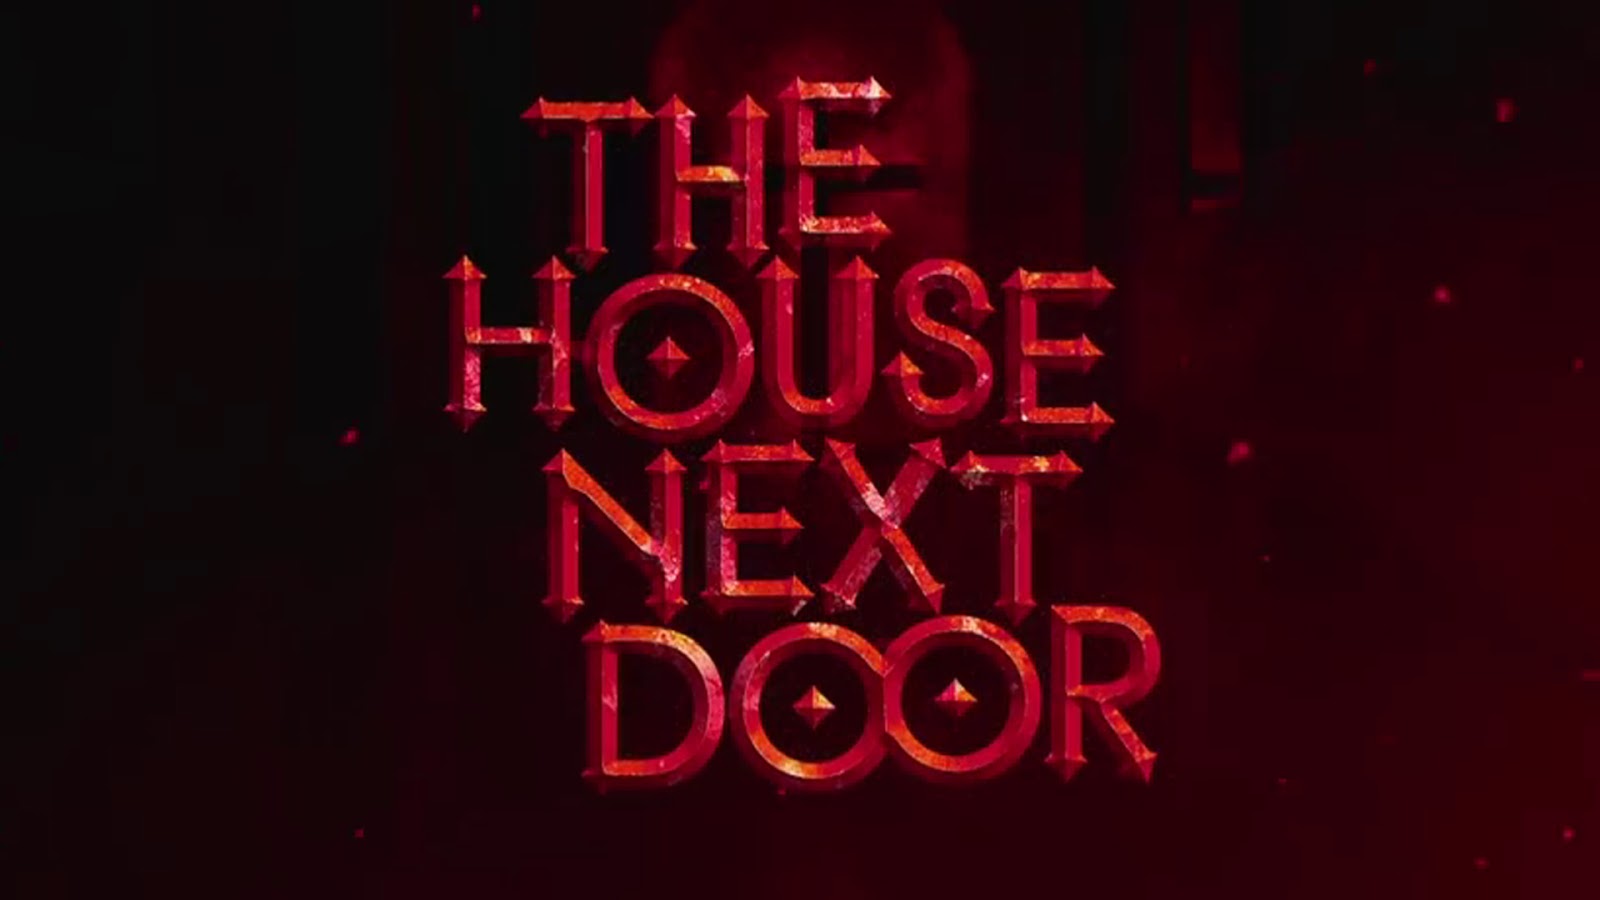 The next House Door. The House next Door bought. House next door